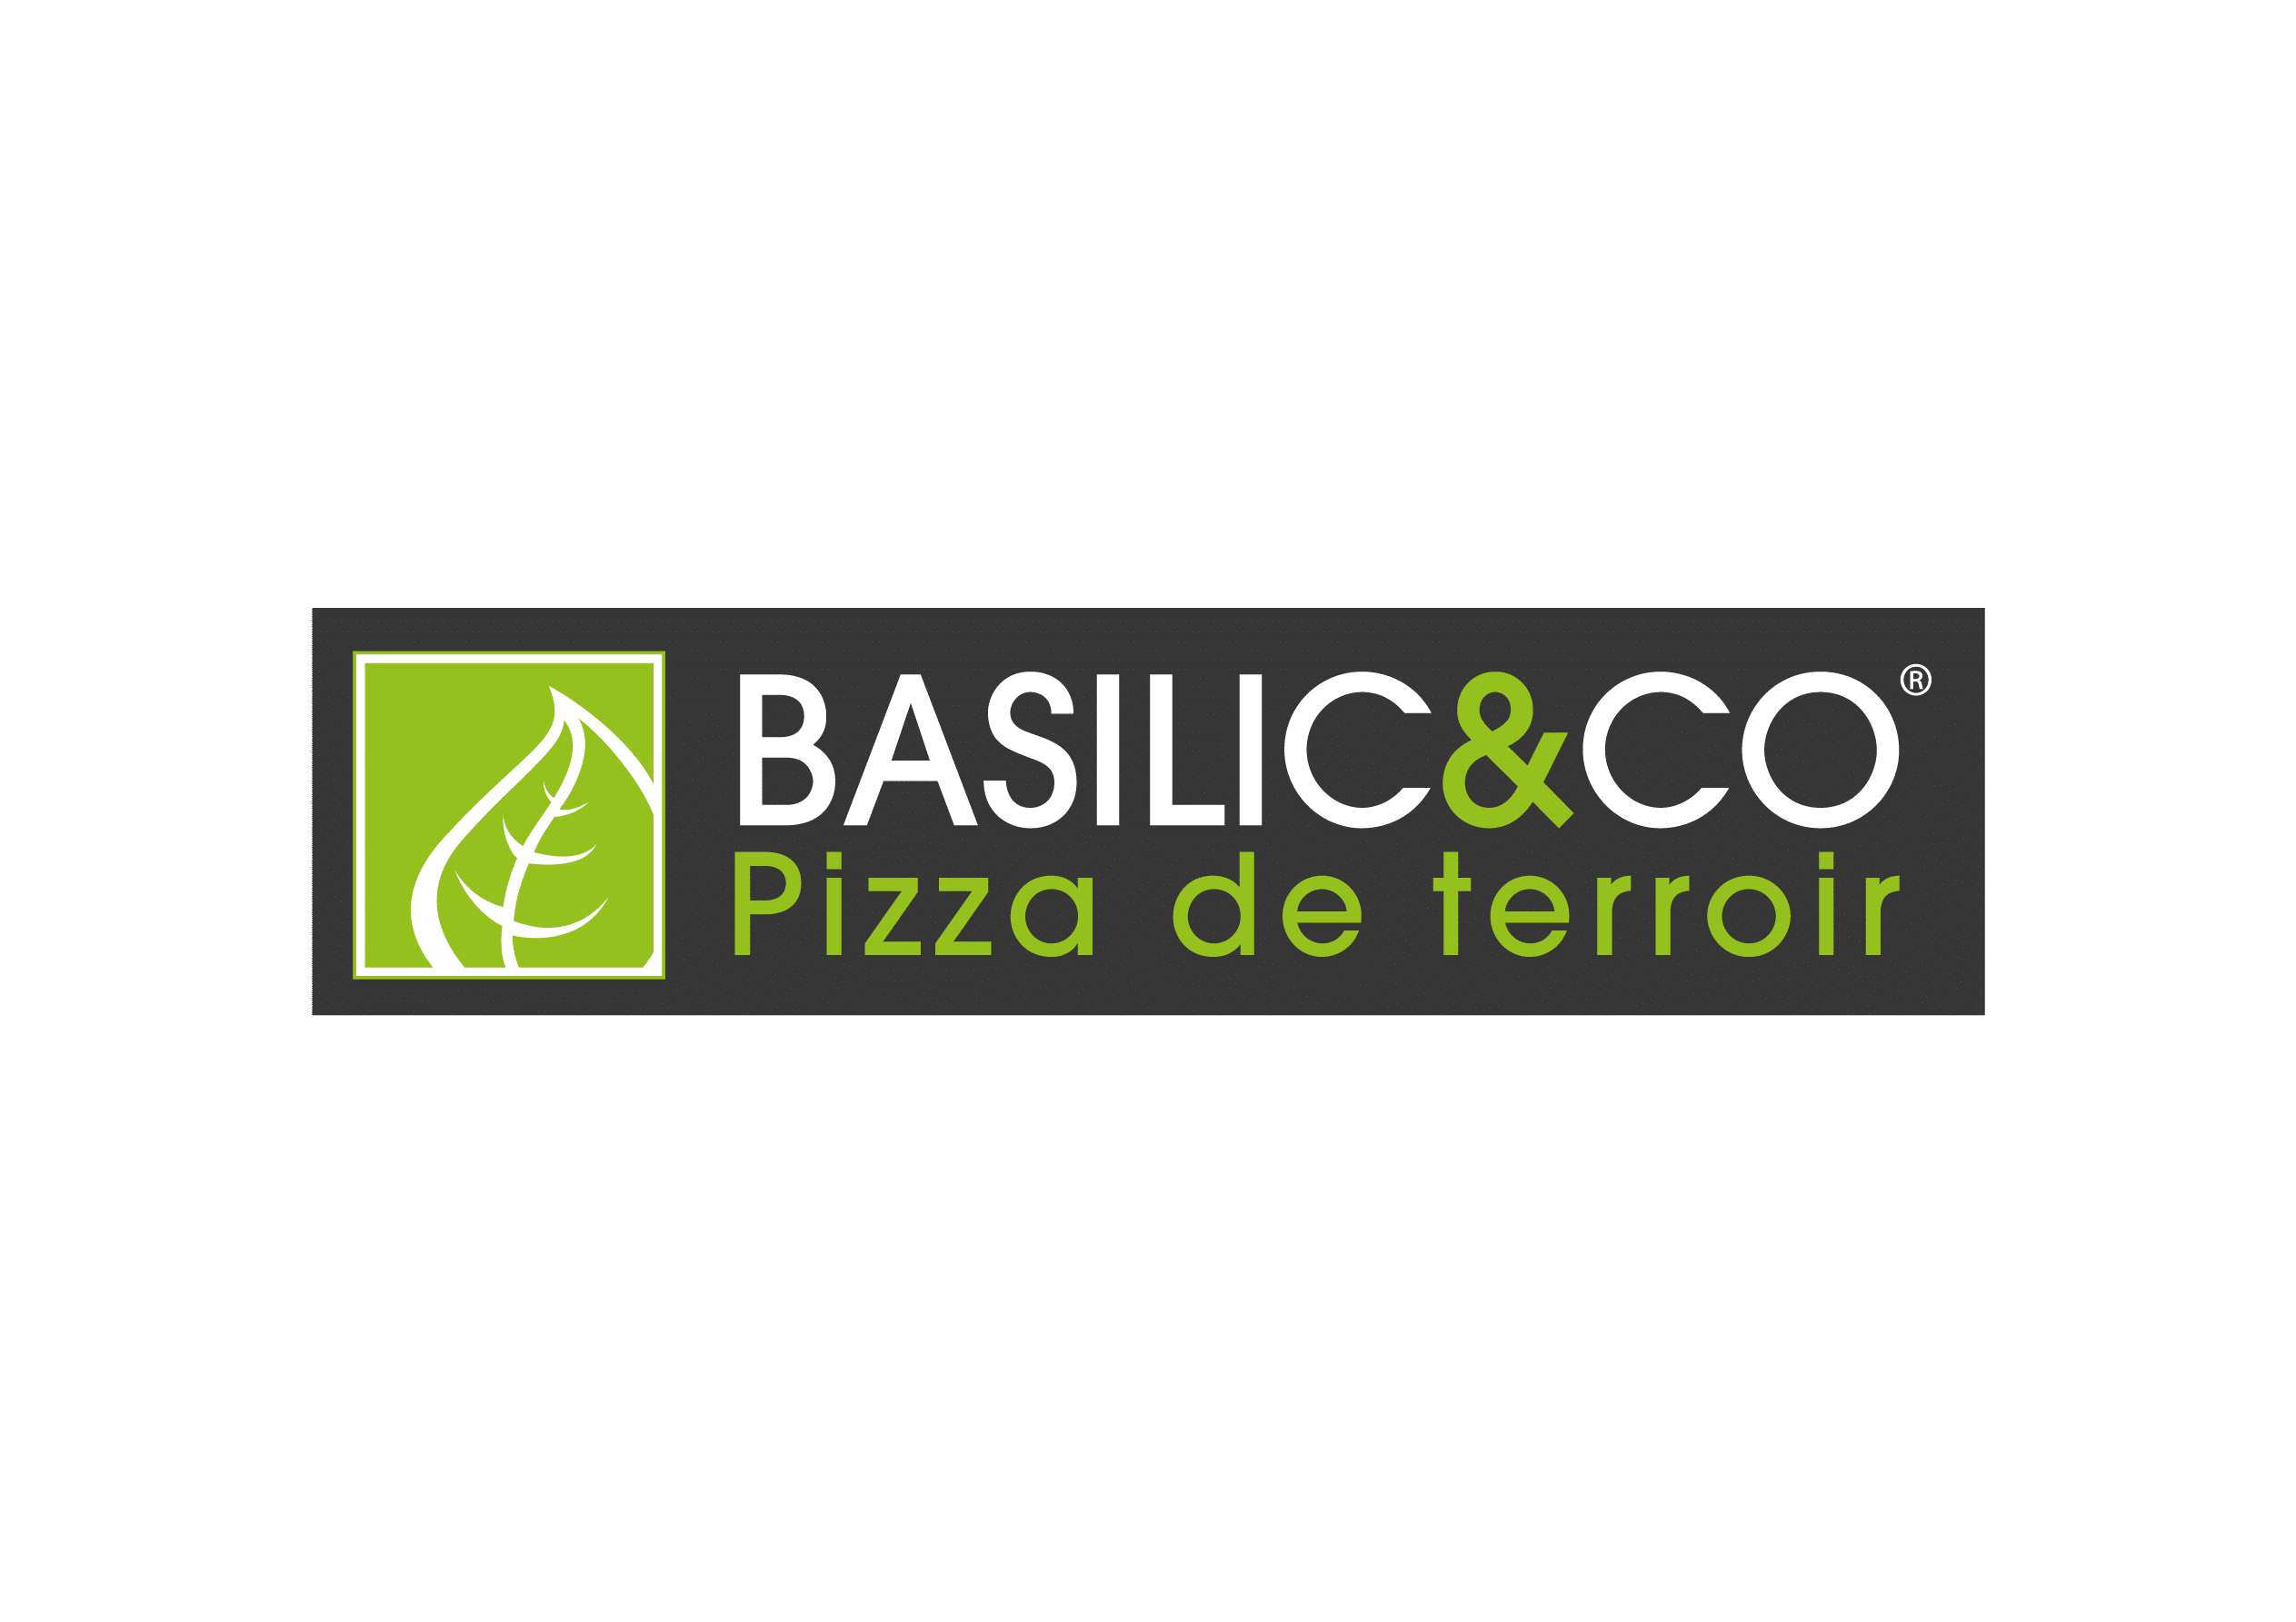 Logos-Basilic-_-Co-ai